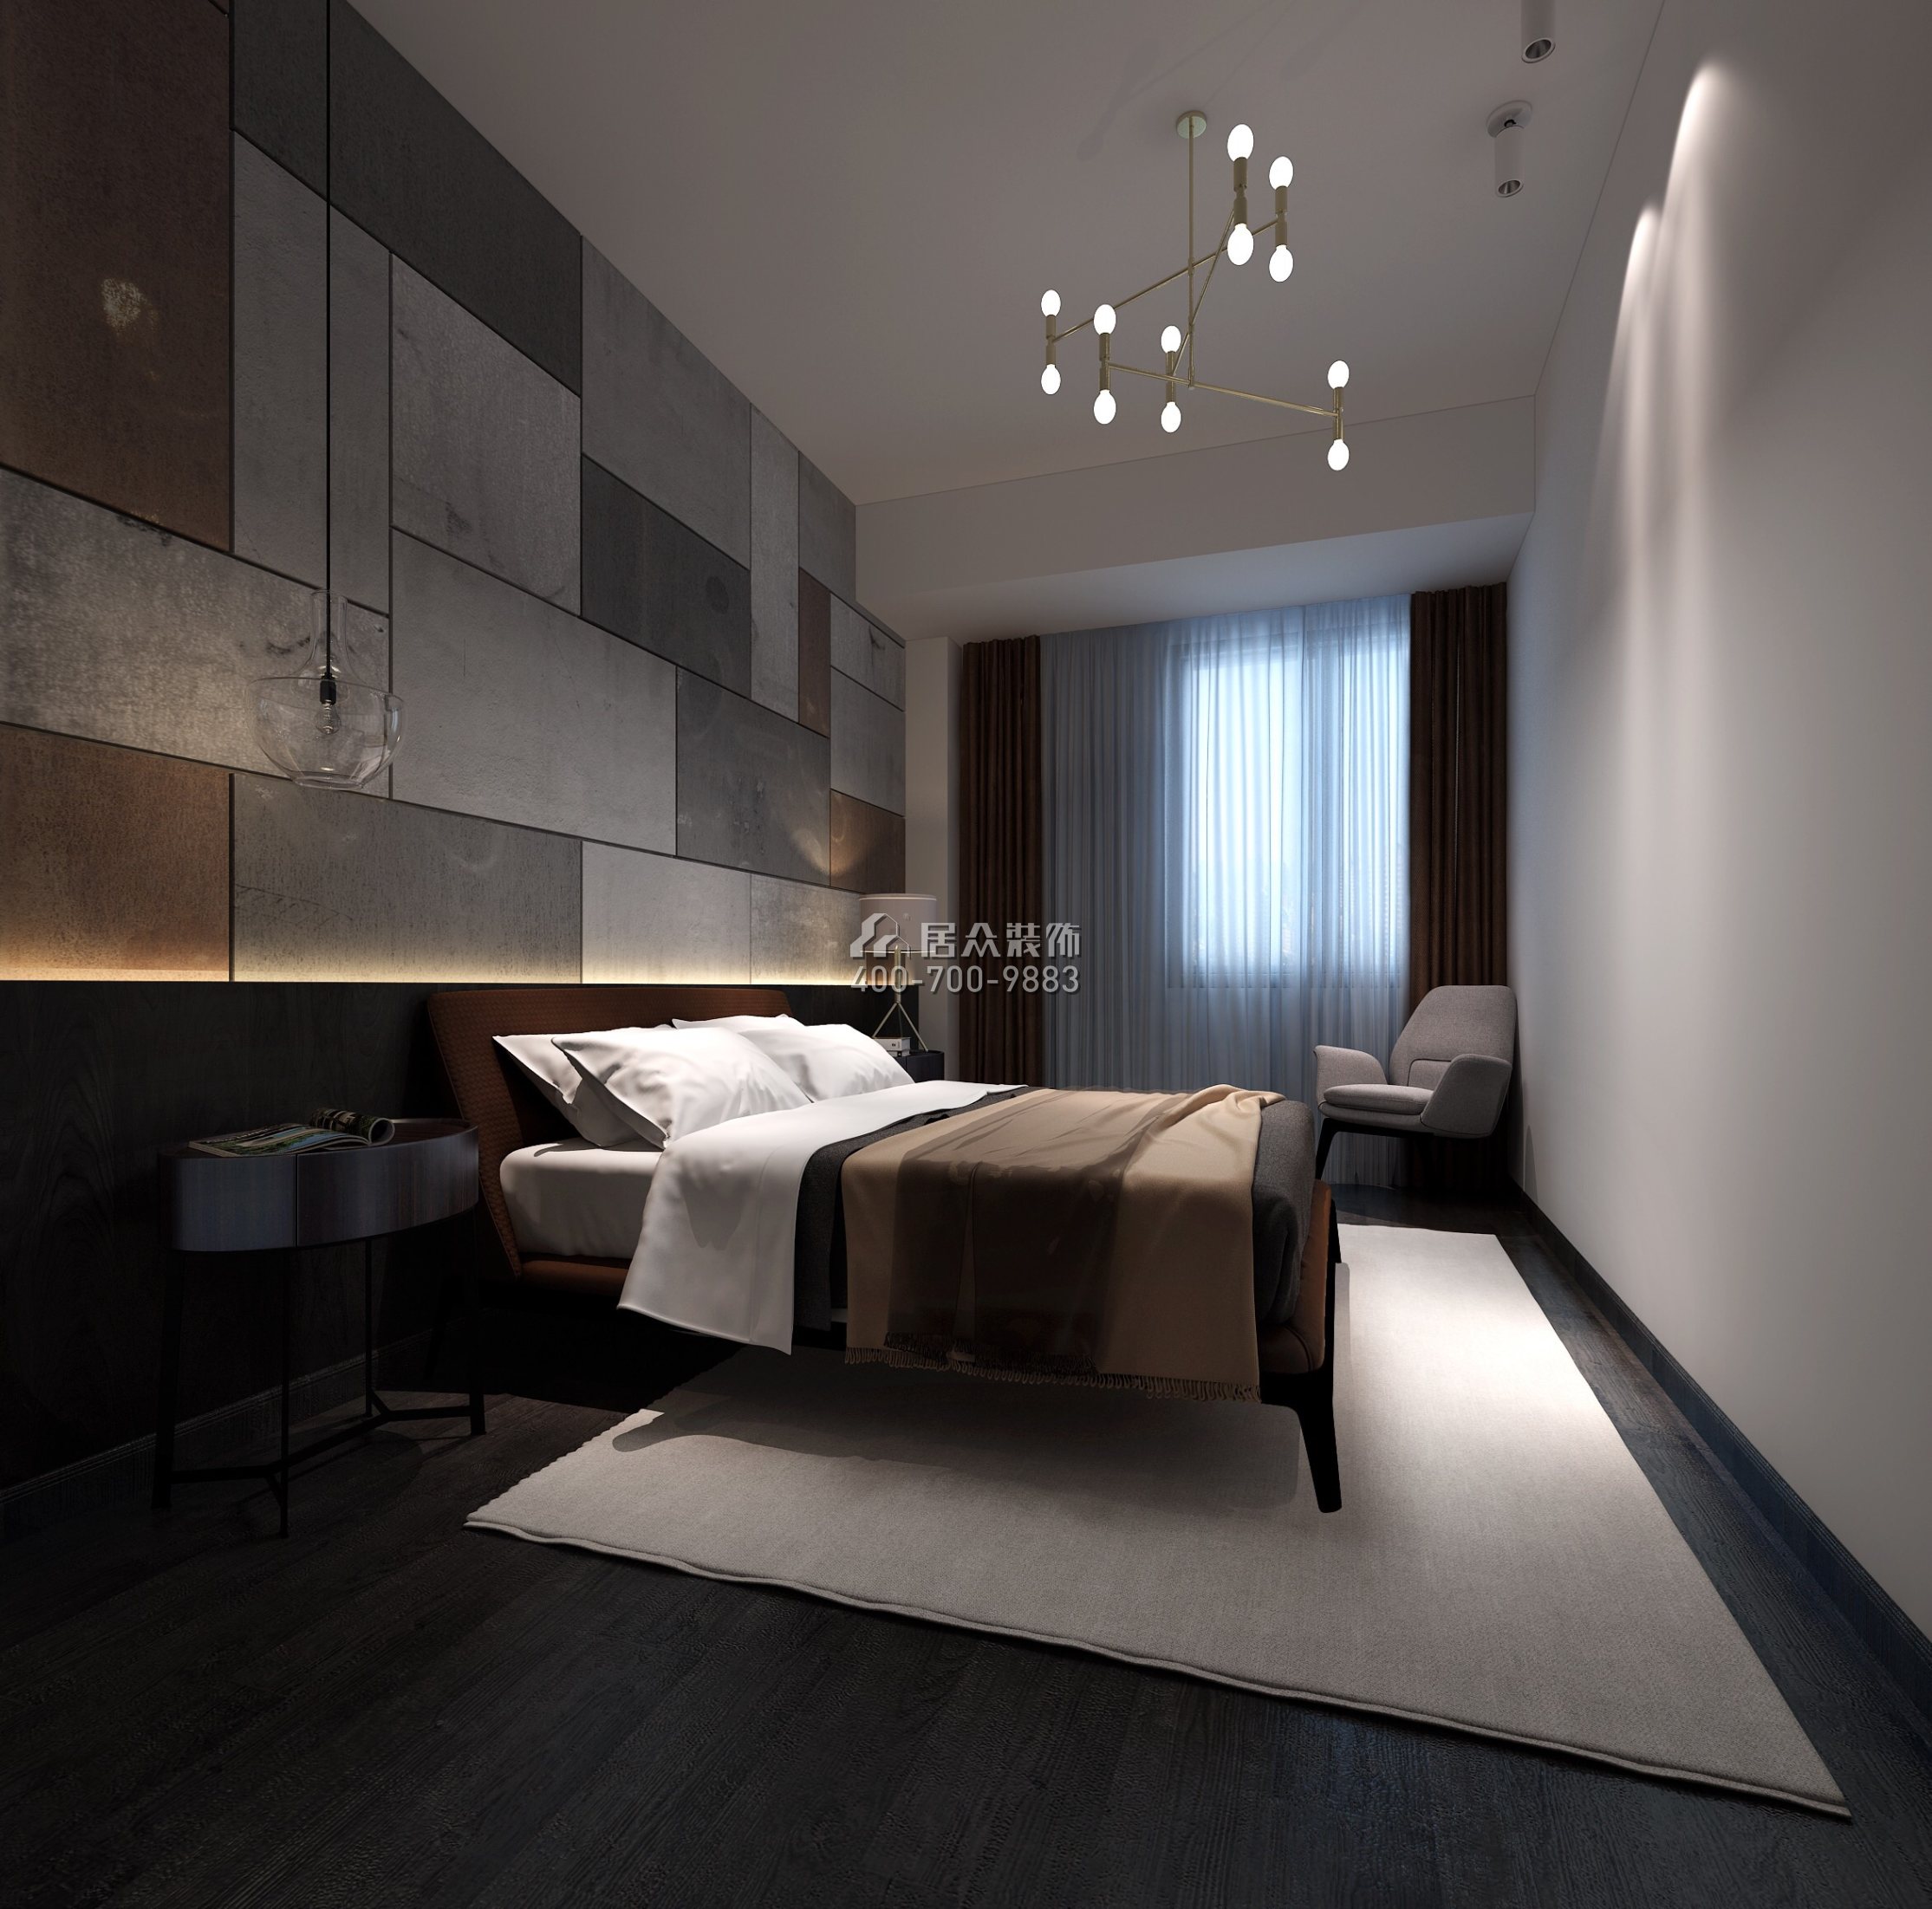 隆生东湖九区155平方米现代简约风格平层户型卧室装修效果图